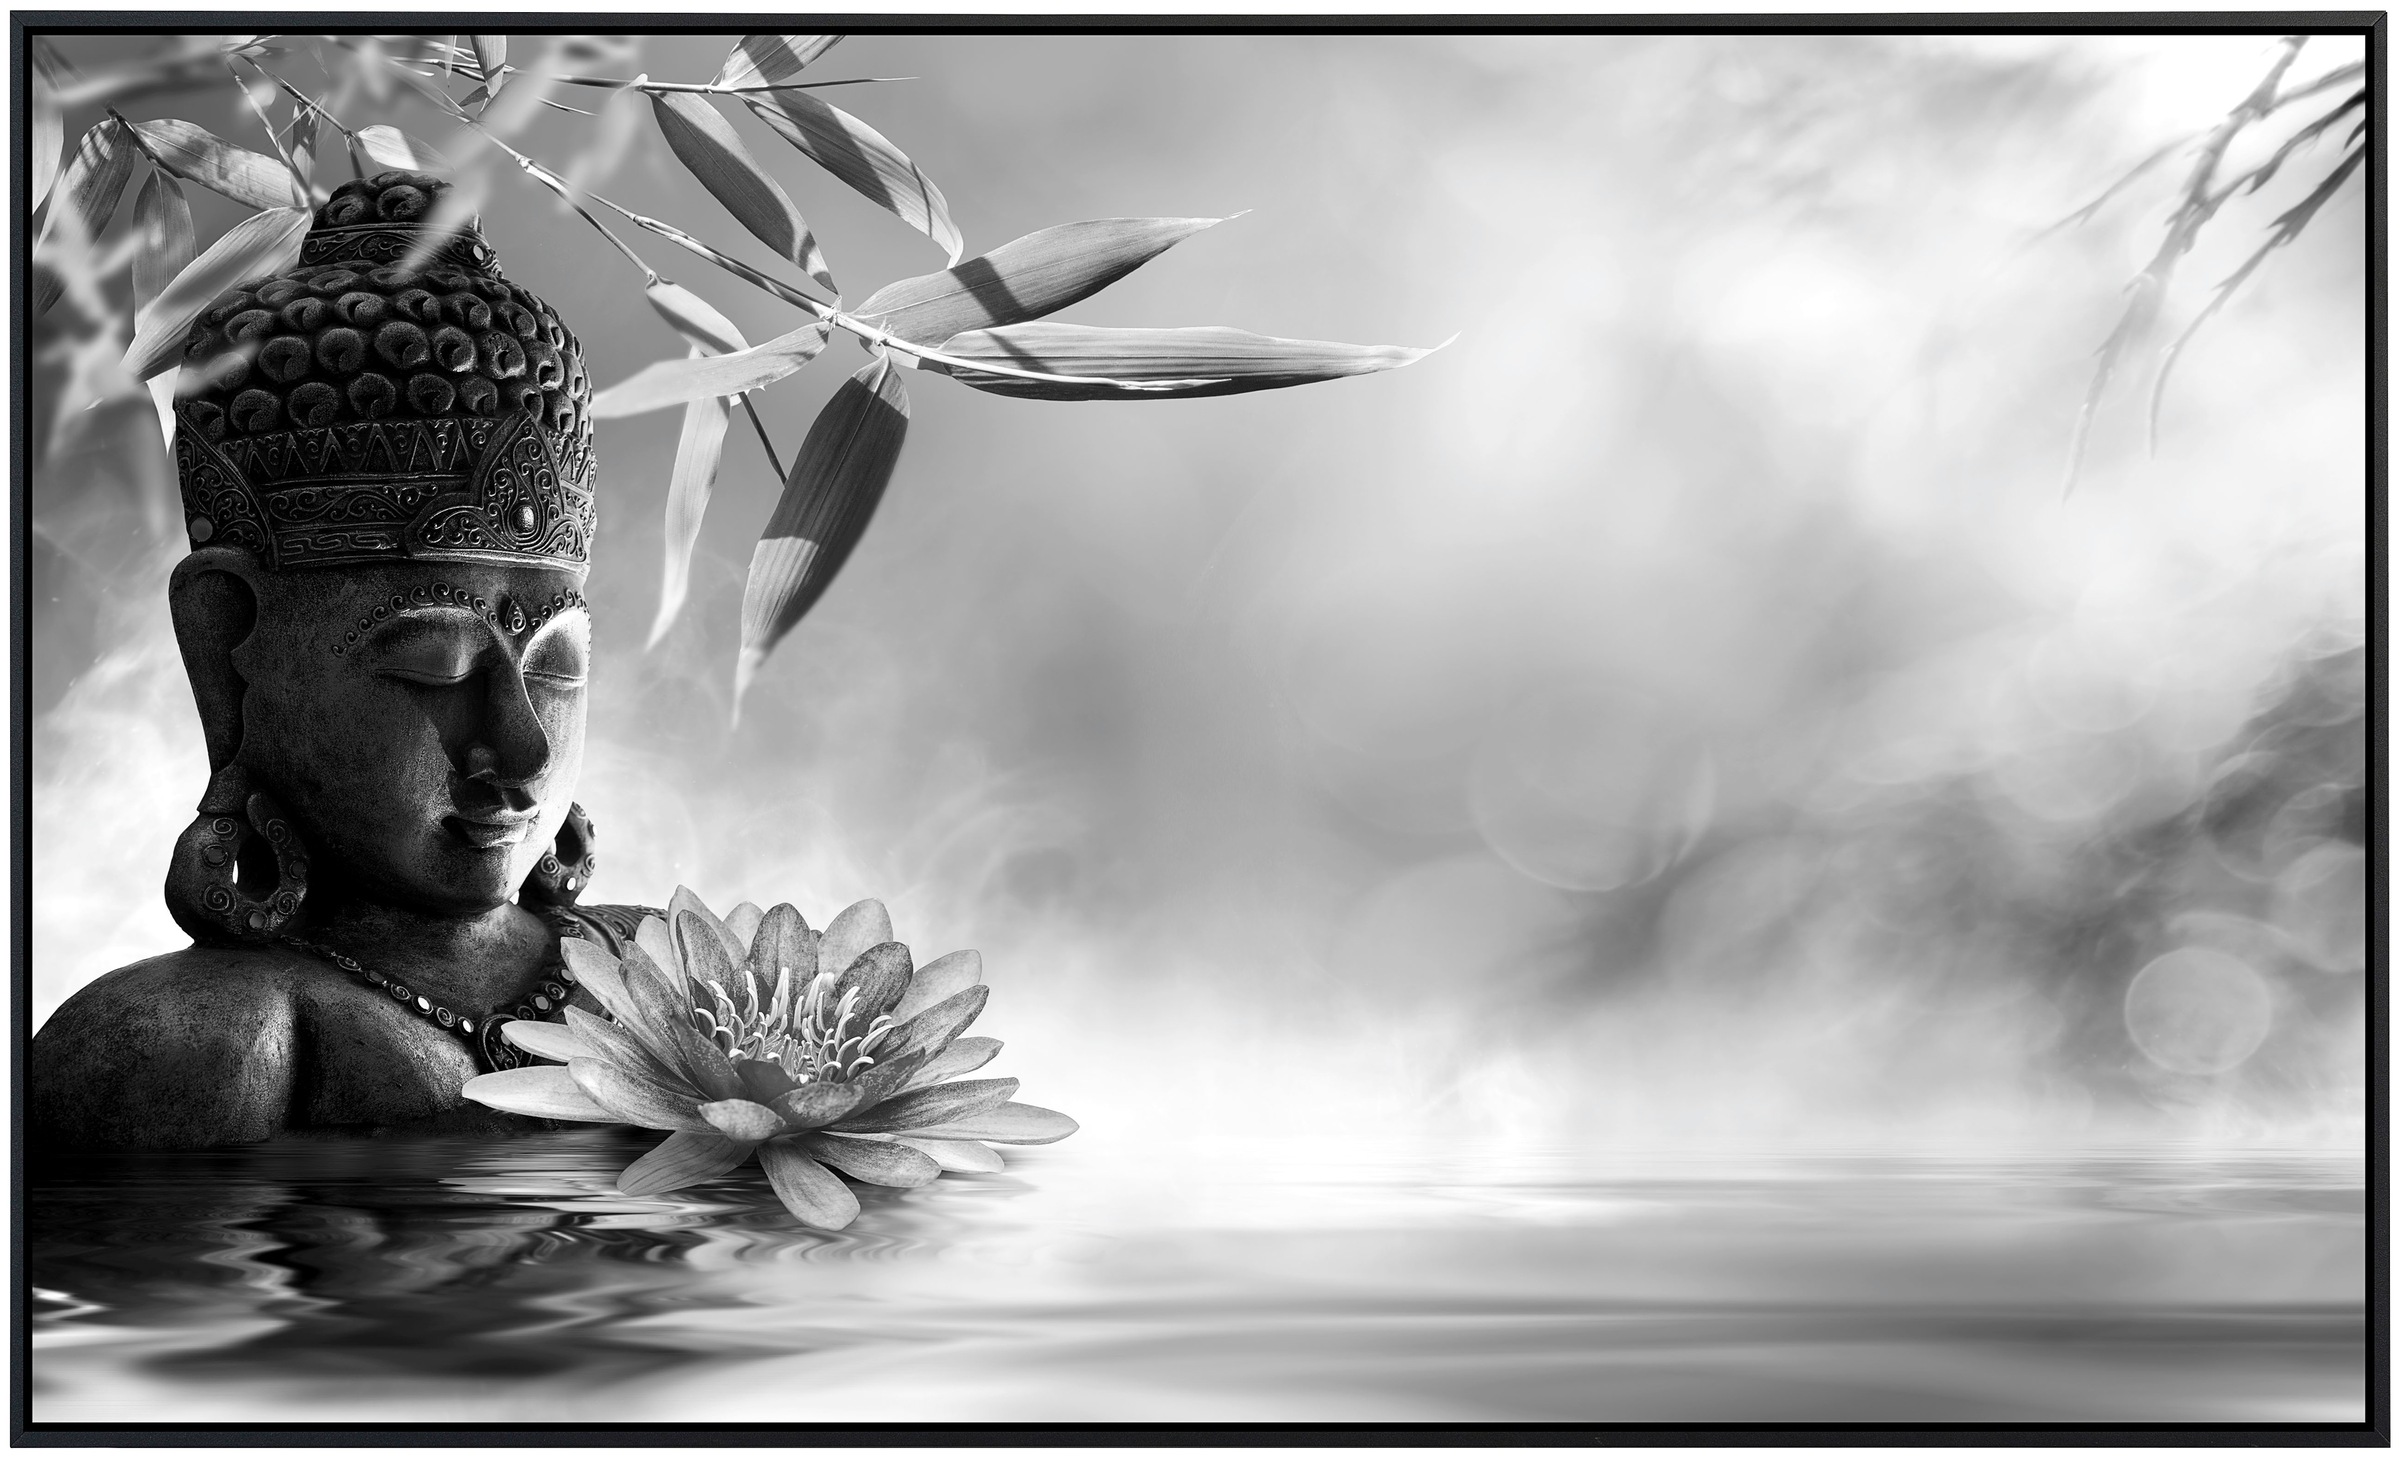 Papermoon Infrarotheizung »Buddah Figur mit Blume Schwarz & Weiß«, sehr angenehme Strahlungswärme